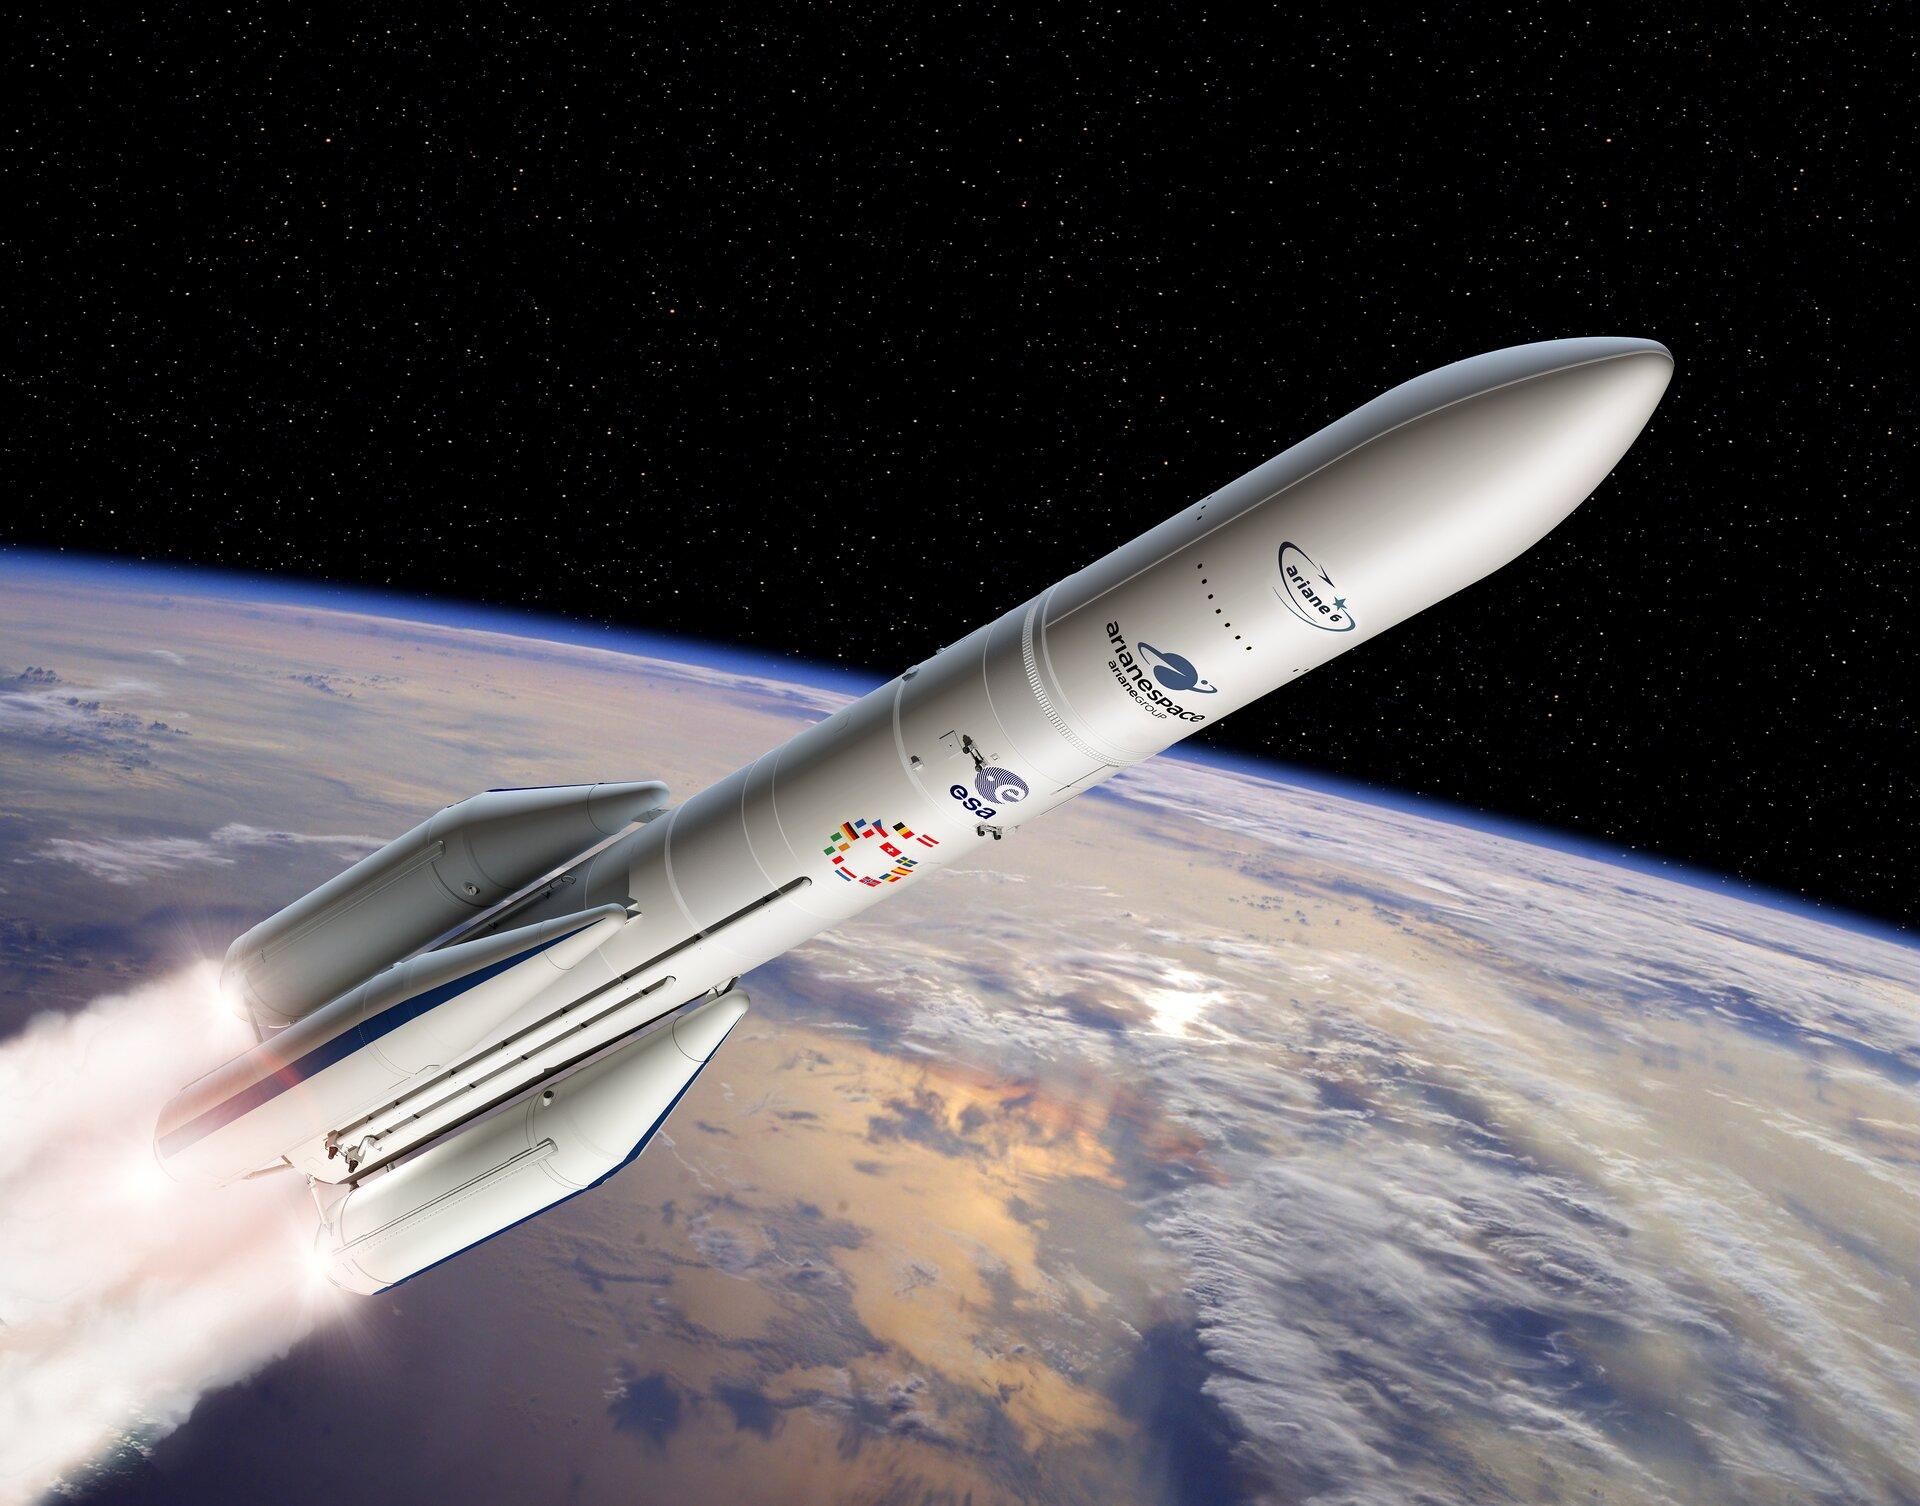 Ariane6 concept